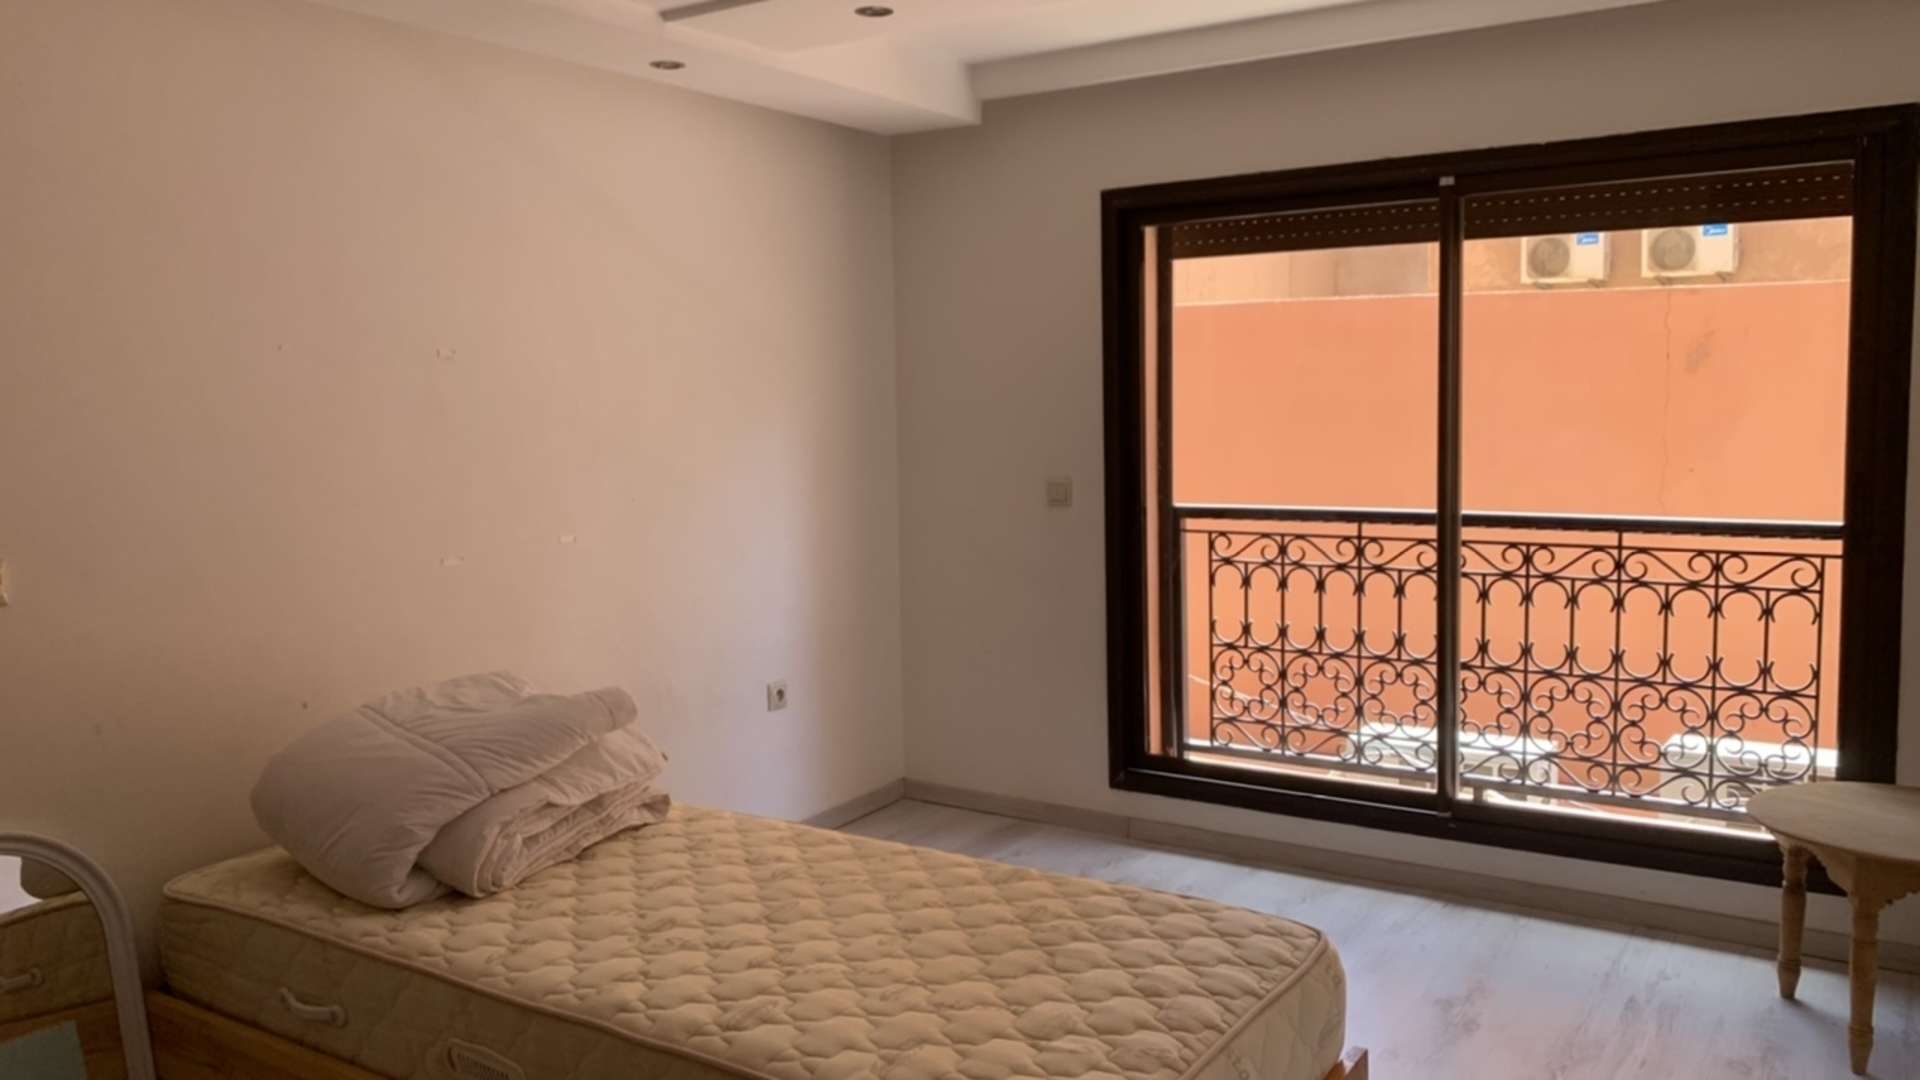 Vente,Duplex,Beau duplex à vendre à Gueliz. Surface de 130.0 m². Avec ascenseur et terrasse,Marrakech,Guéliz